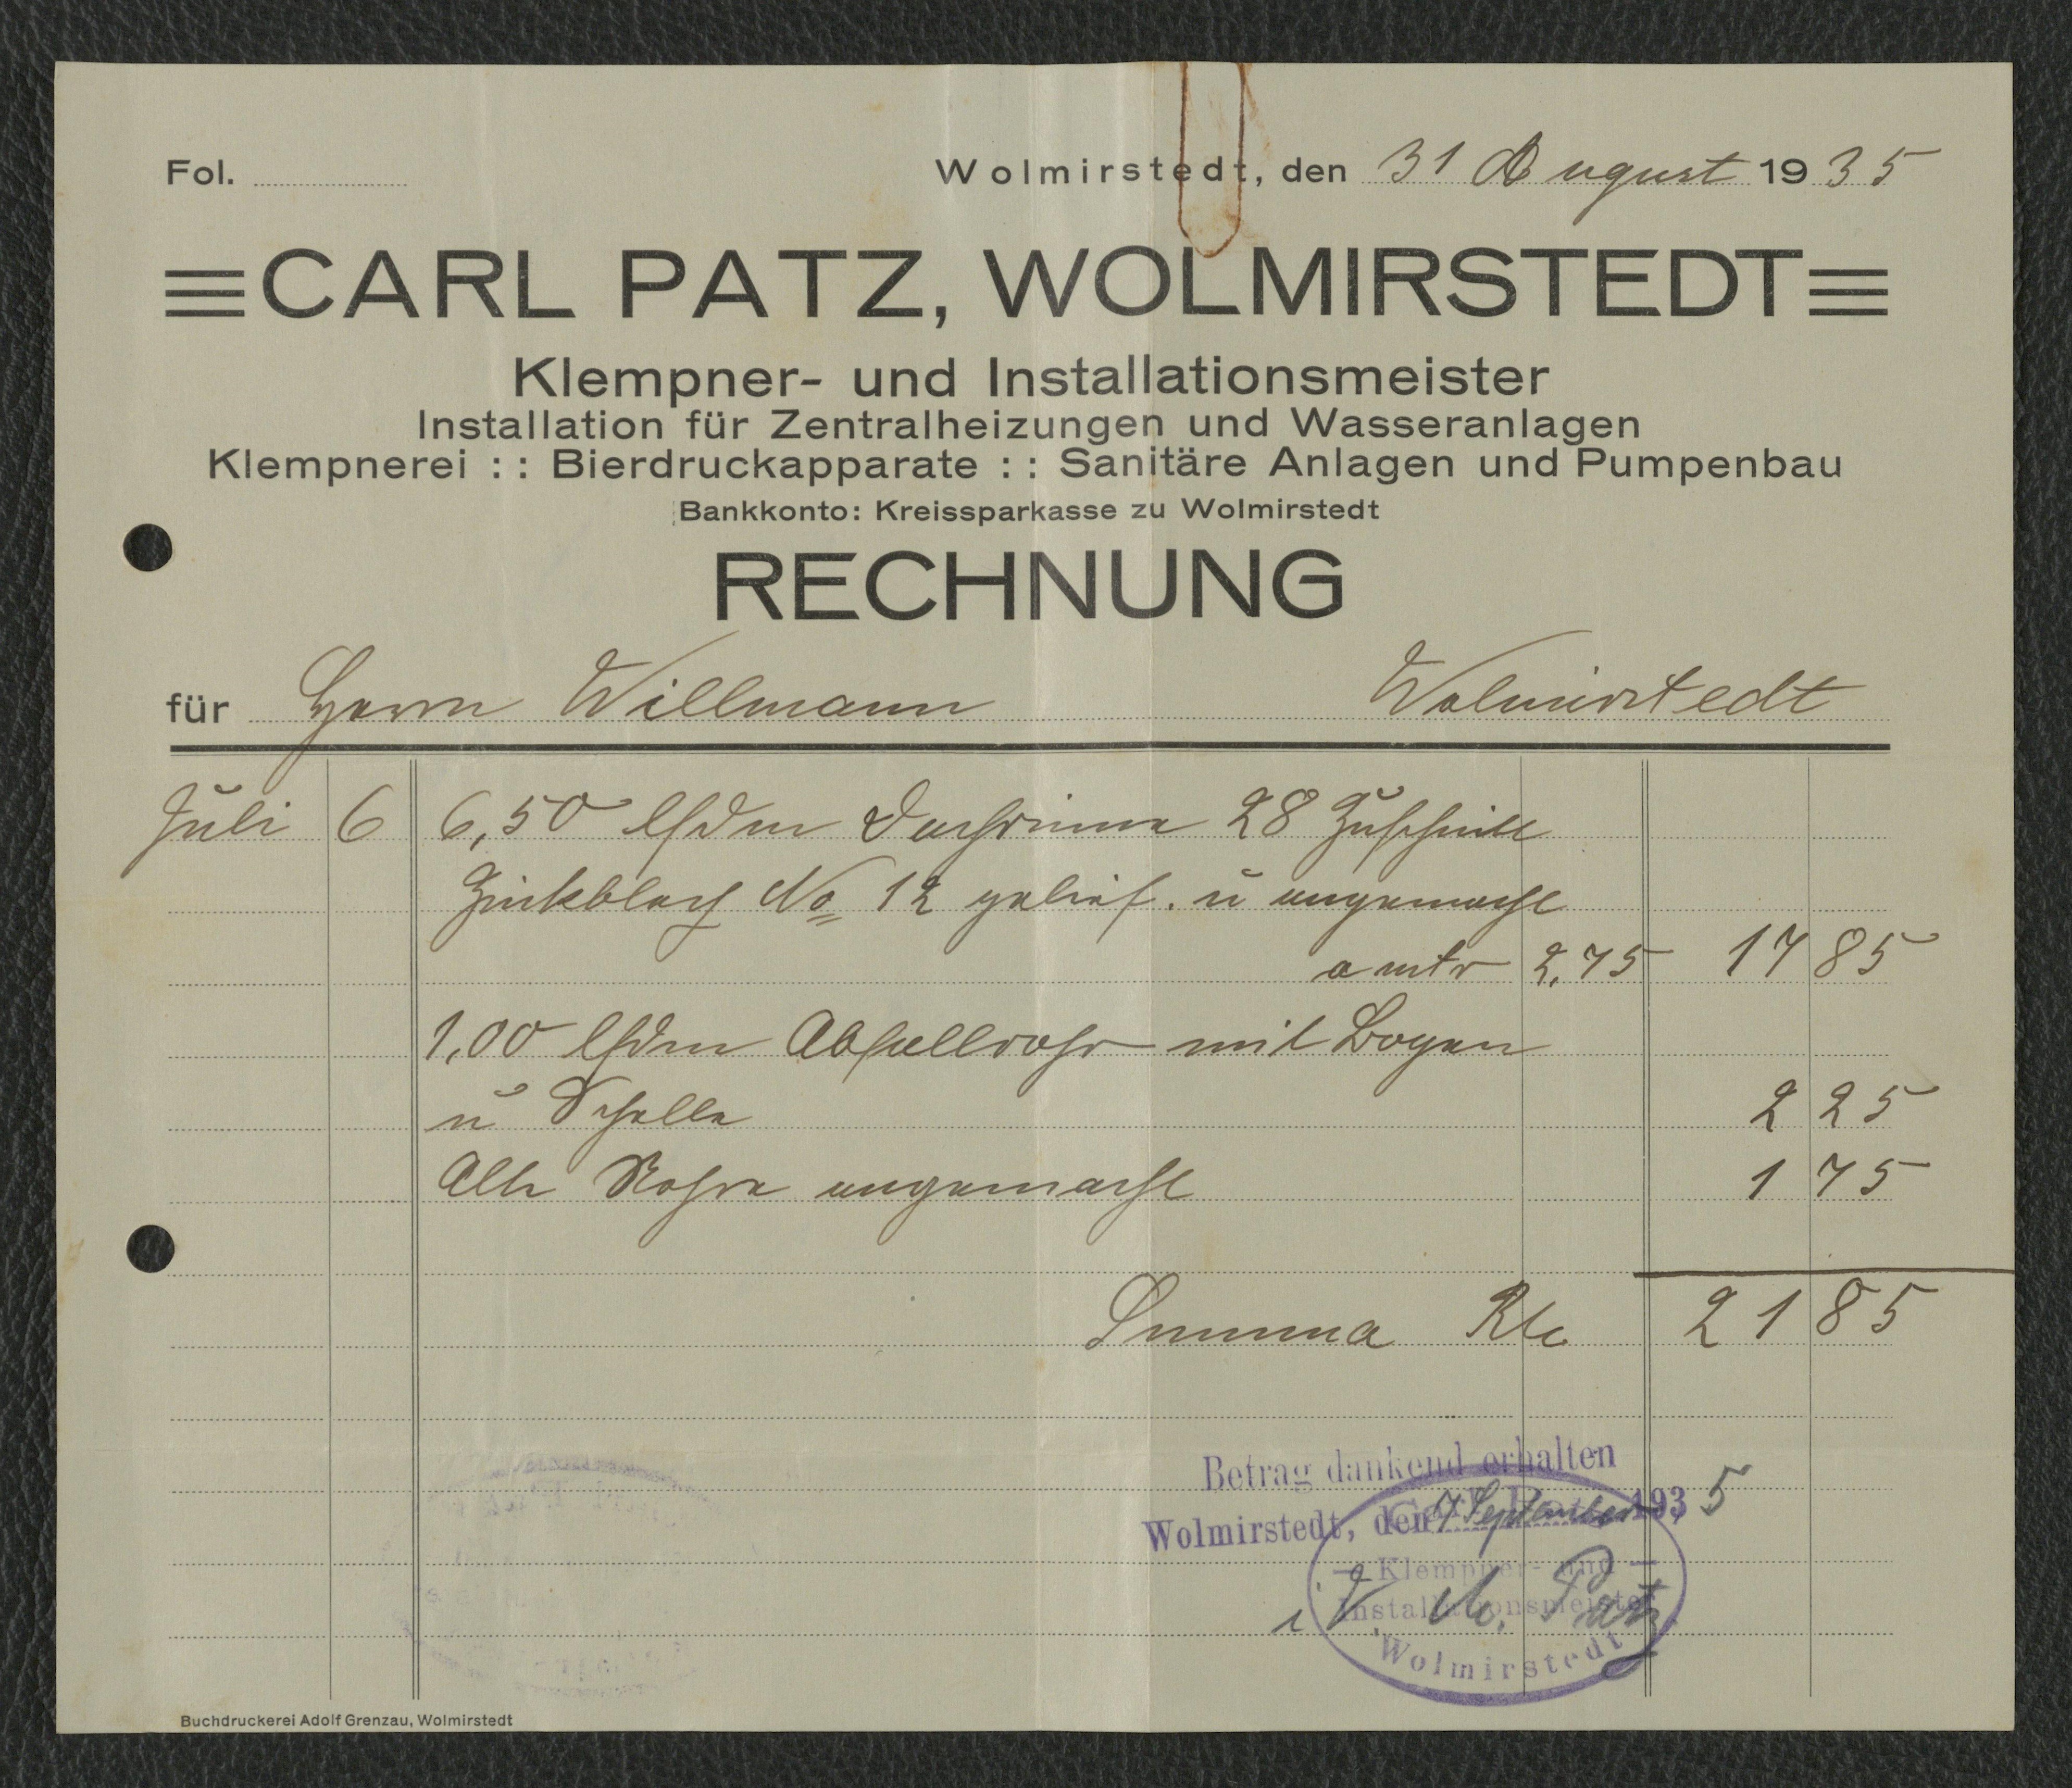 Rechnung Klempner- und Installationsmeister Carl Patz für Willmann, Wolmirstedt vom 31.08.1935 (Museum Wolmirstedt RR-F)